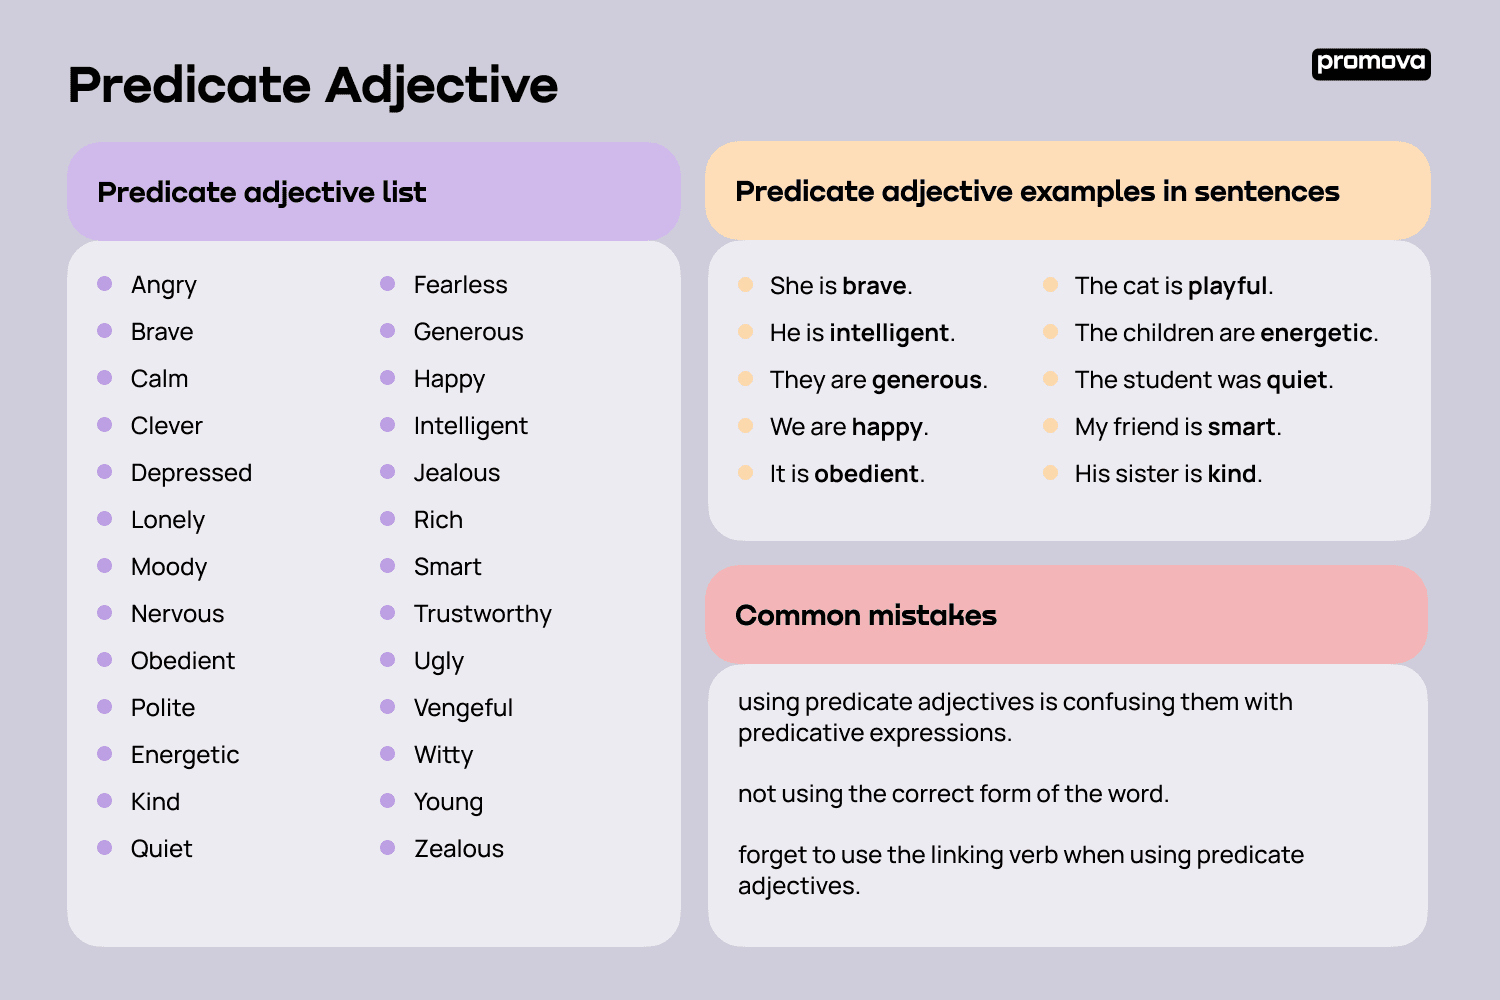 Predicate adjective list